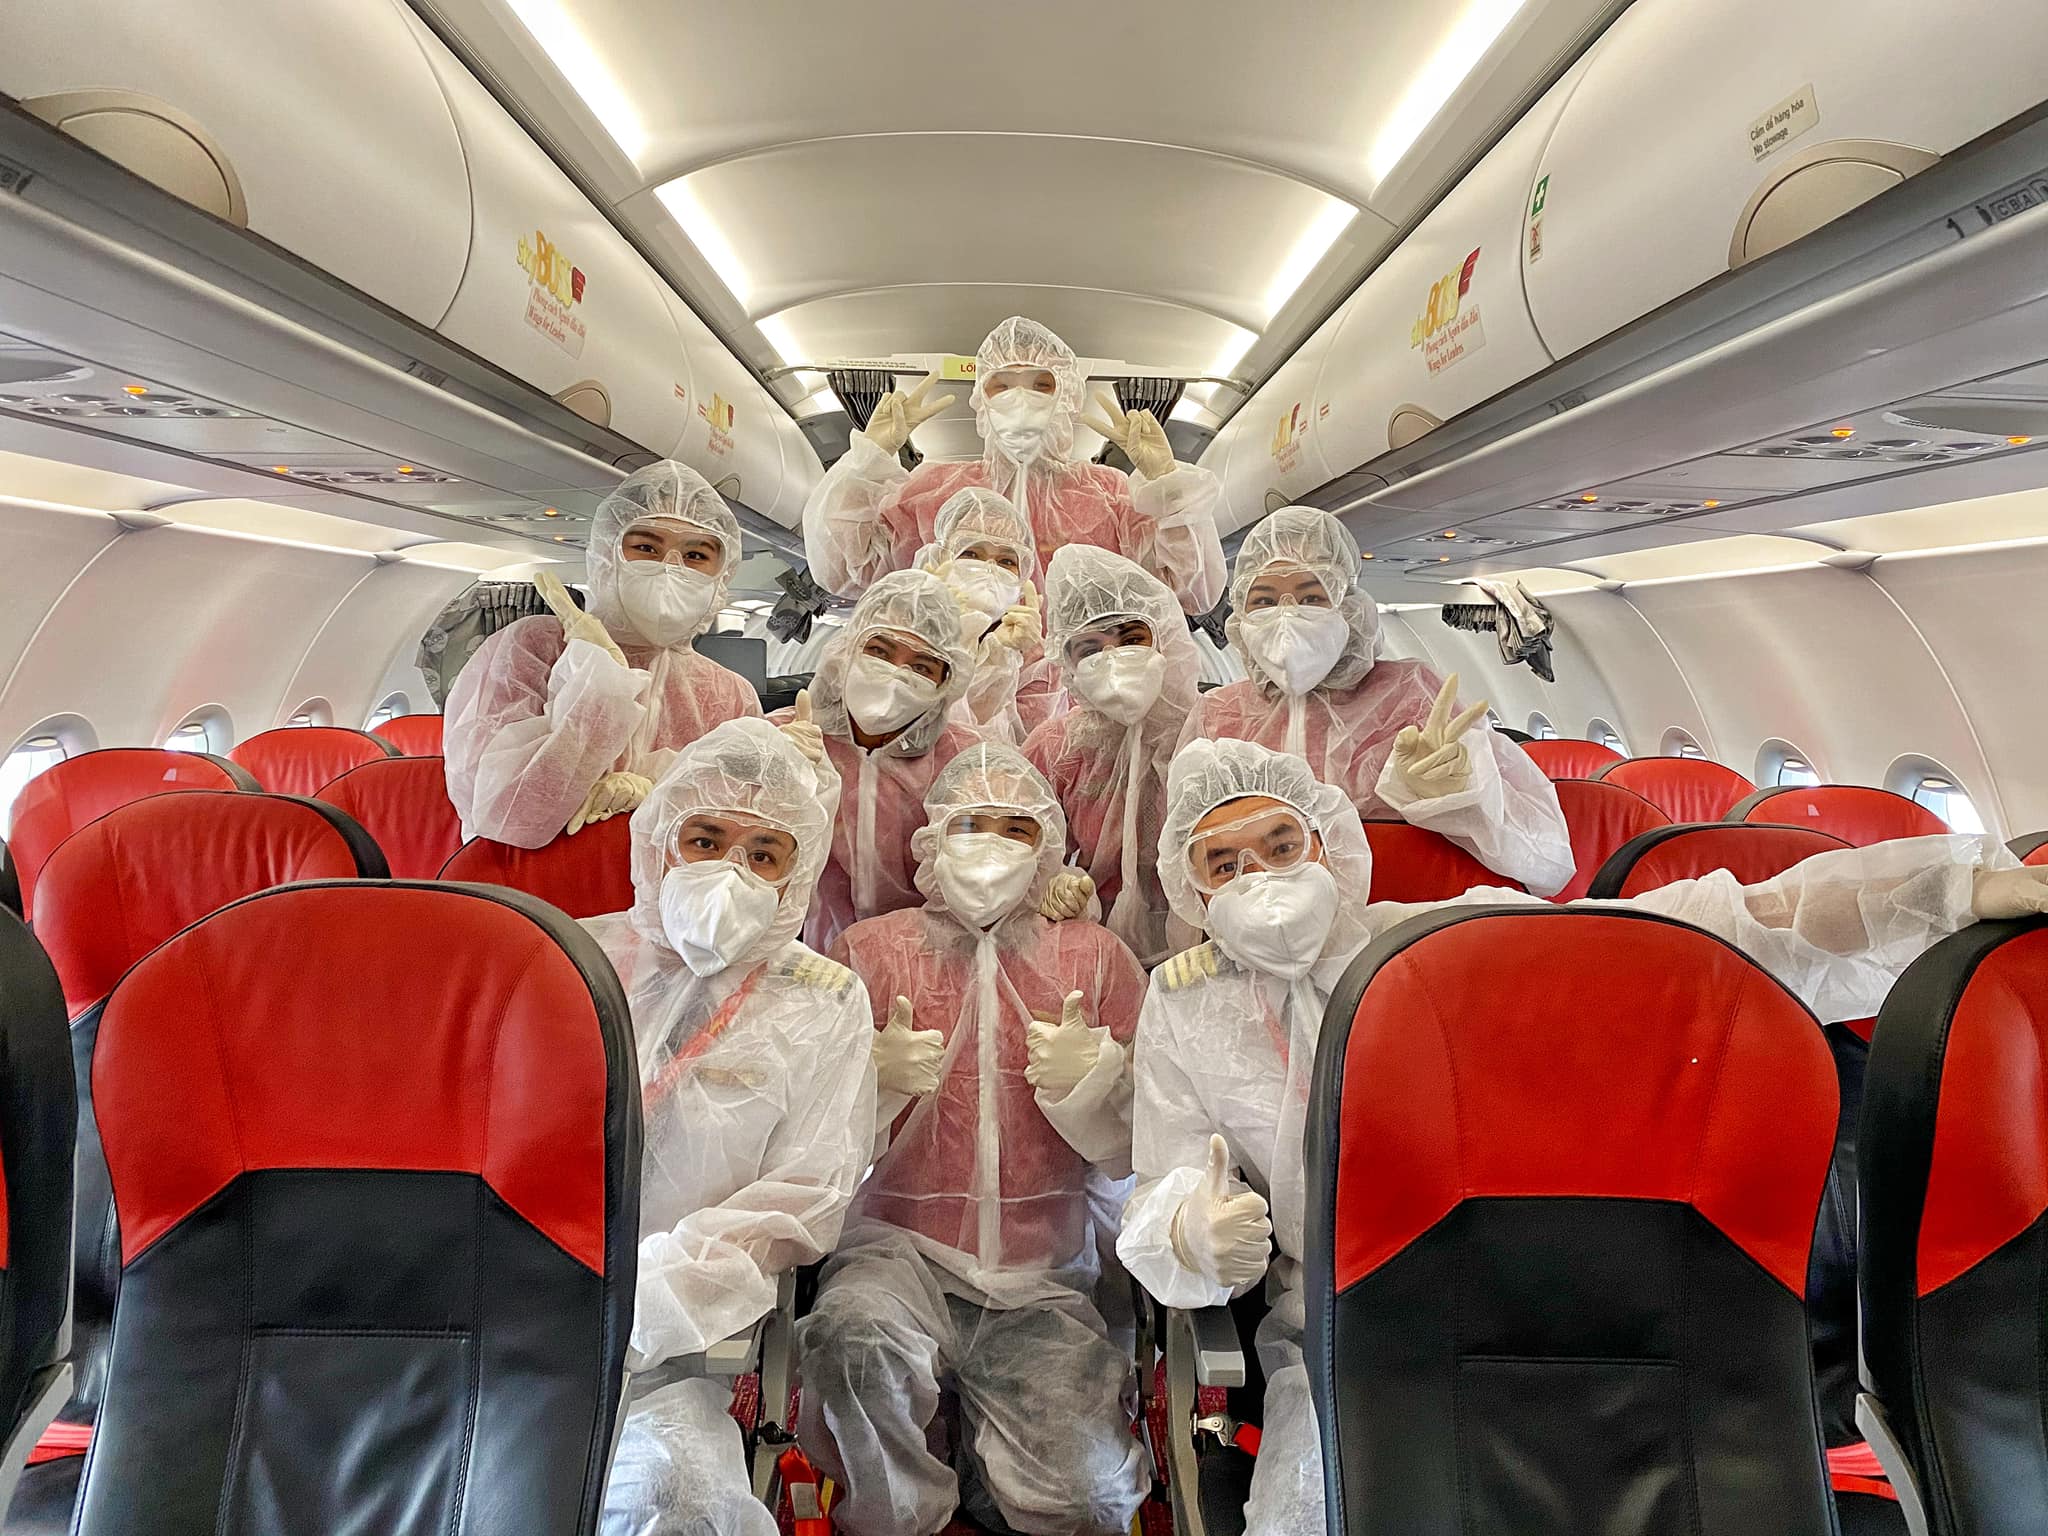 Thực tế nguy cơ lây nhiễm COVID trên máy bay là rất thấp